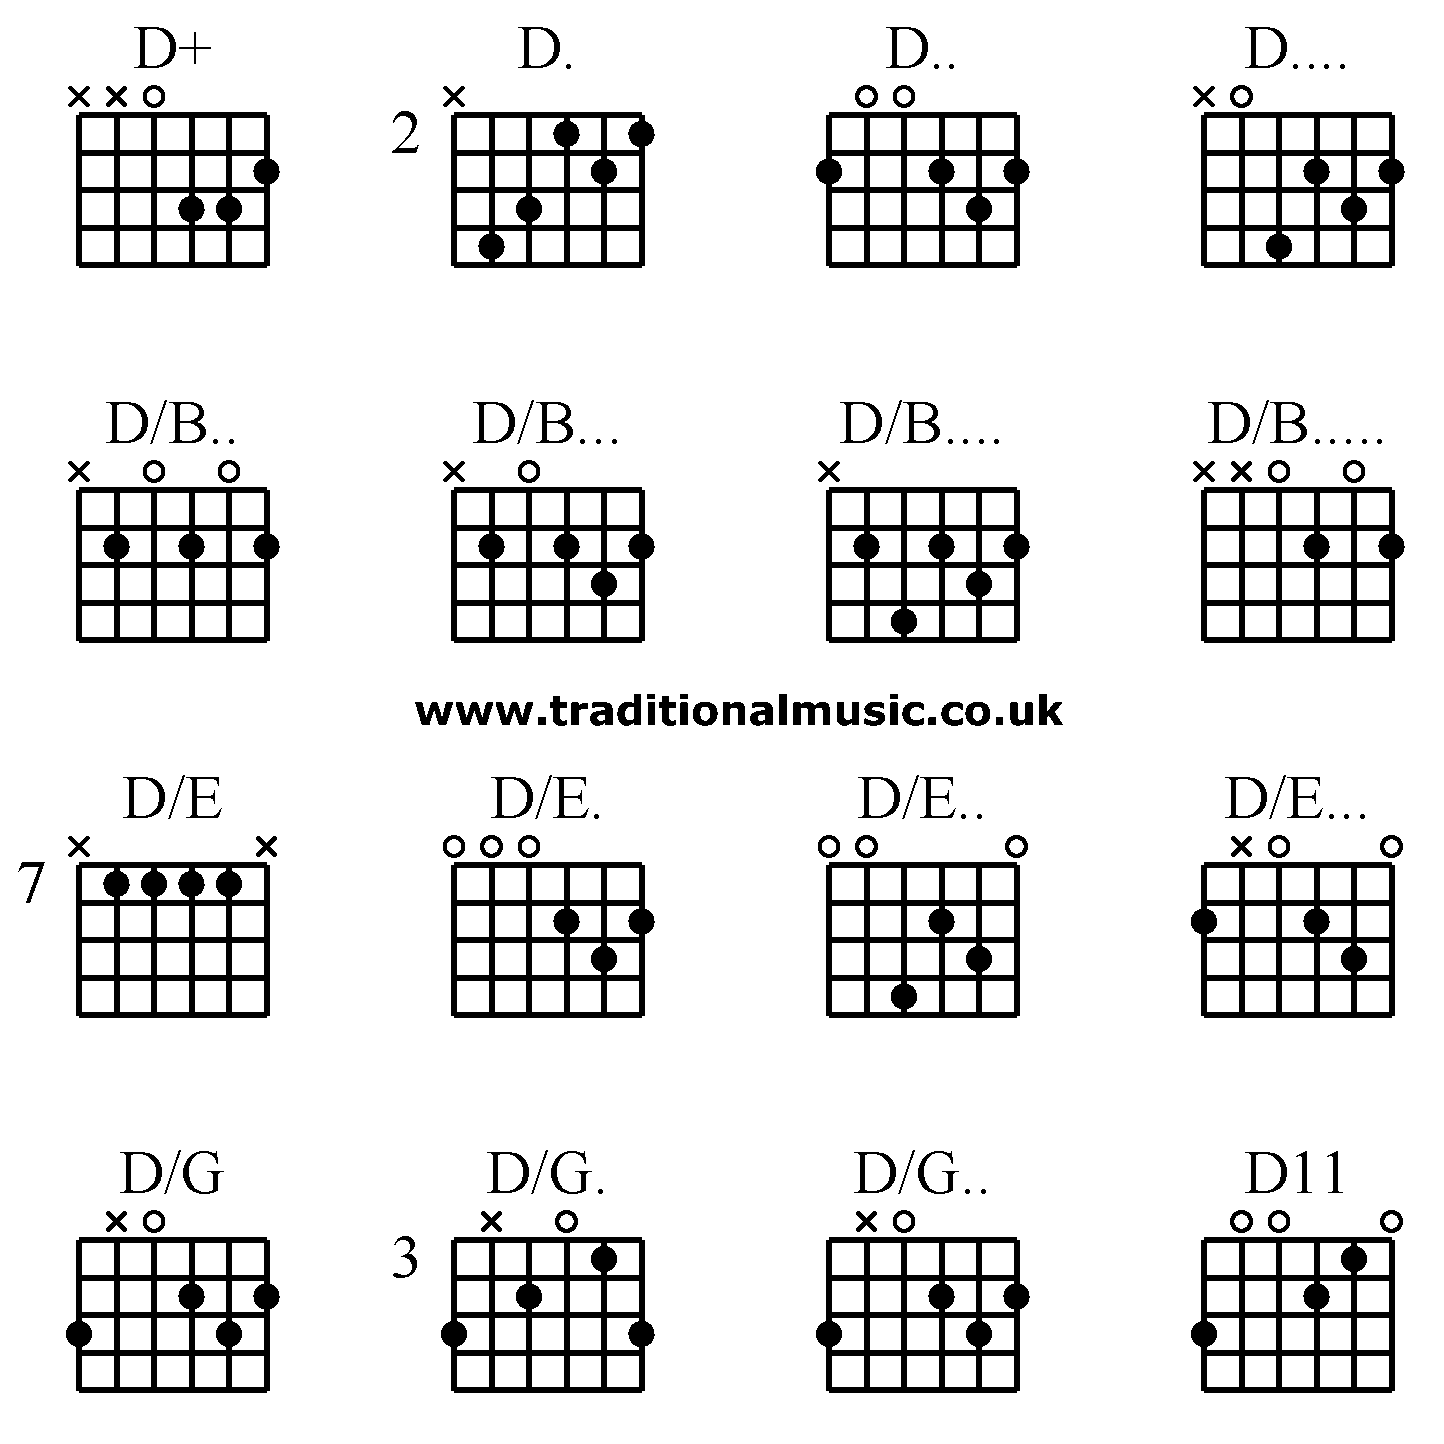 Advanced guitar chords:D+ D. D.. D.... D/B.. D/B... D/B.... D/B..... D/E D/E. D/E.. D/E... D/G D/G. D/G.. D11